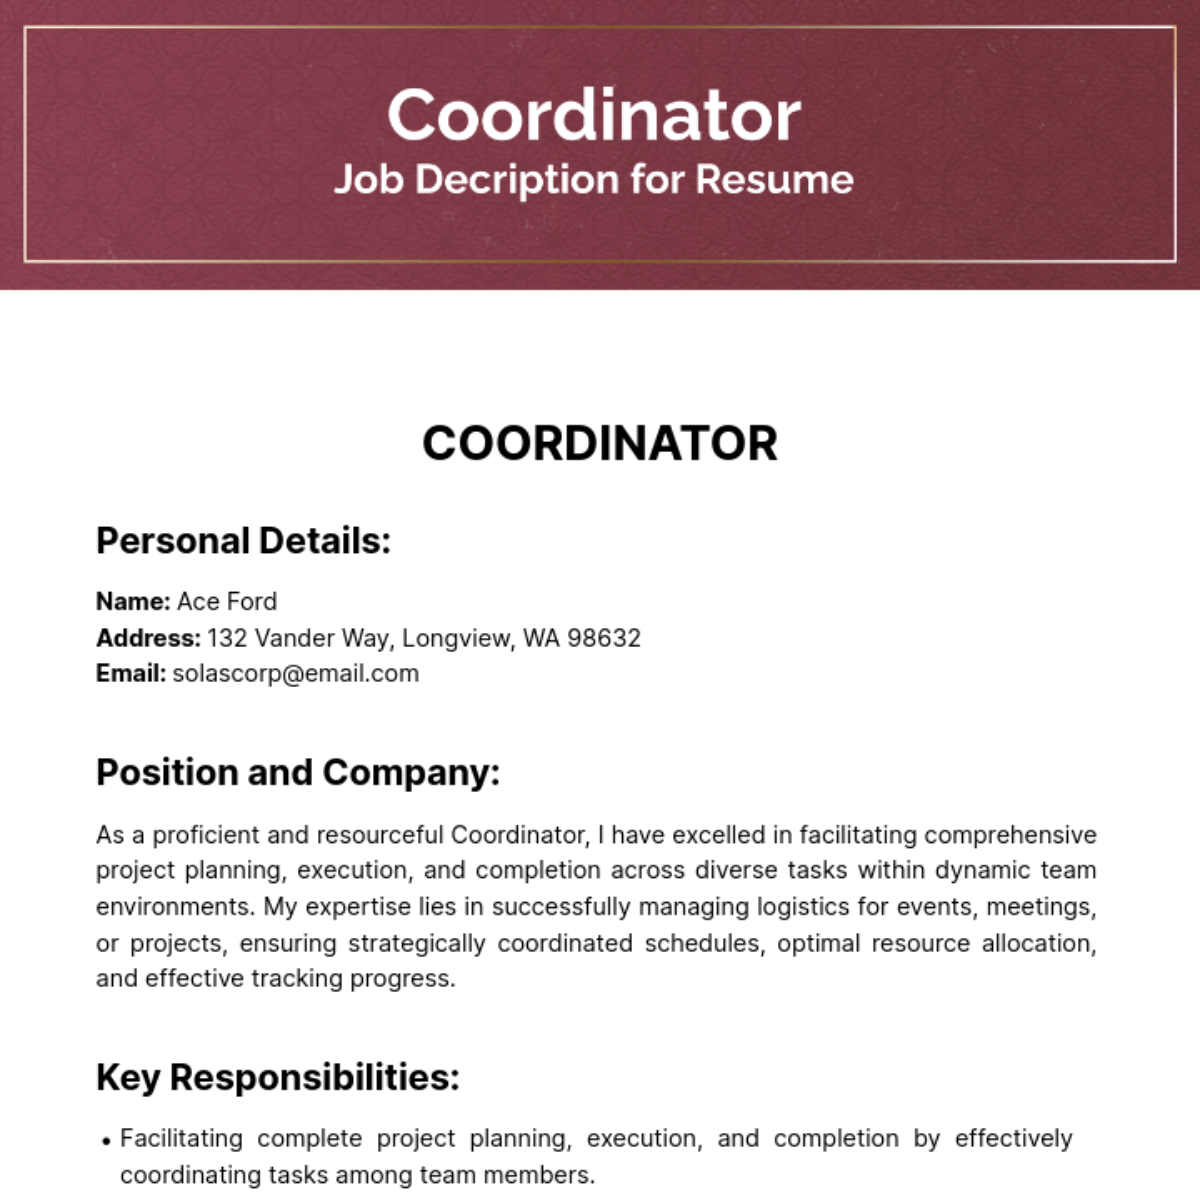 Coordinator Job Description for Resume Template